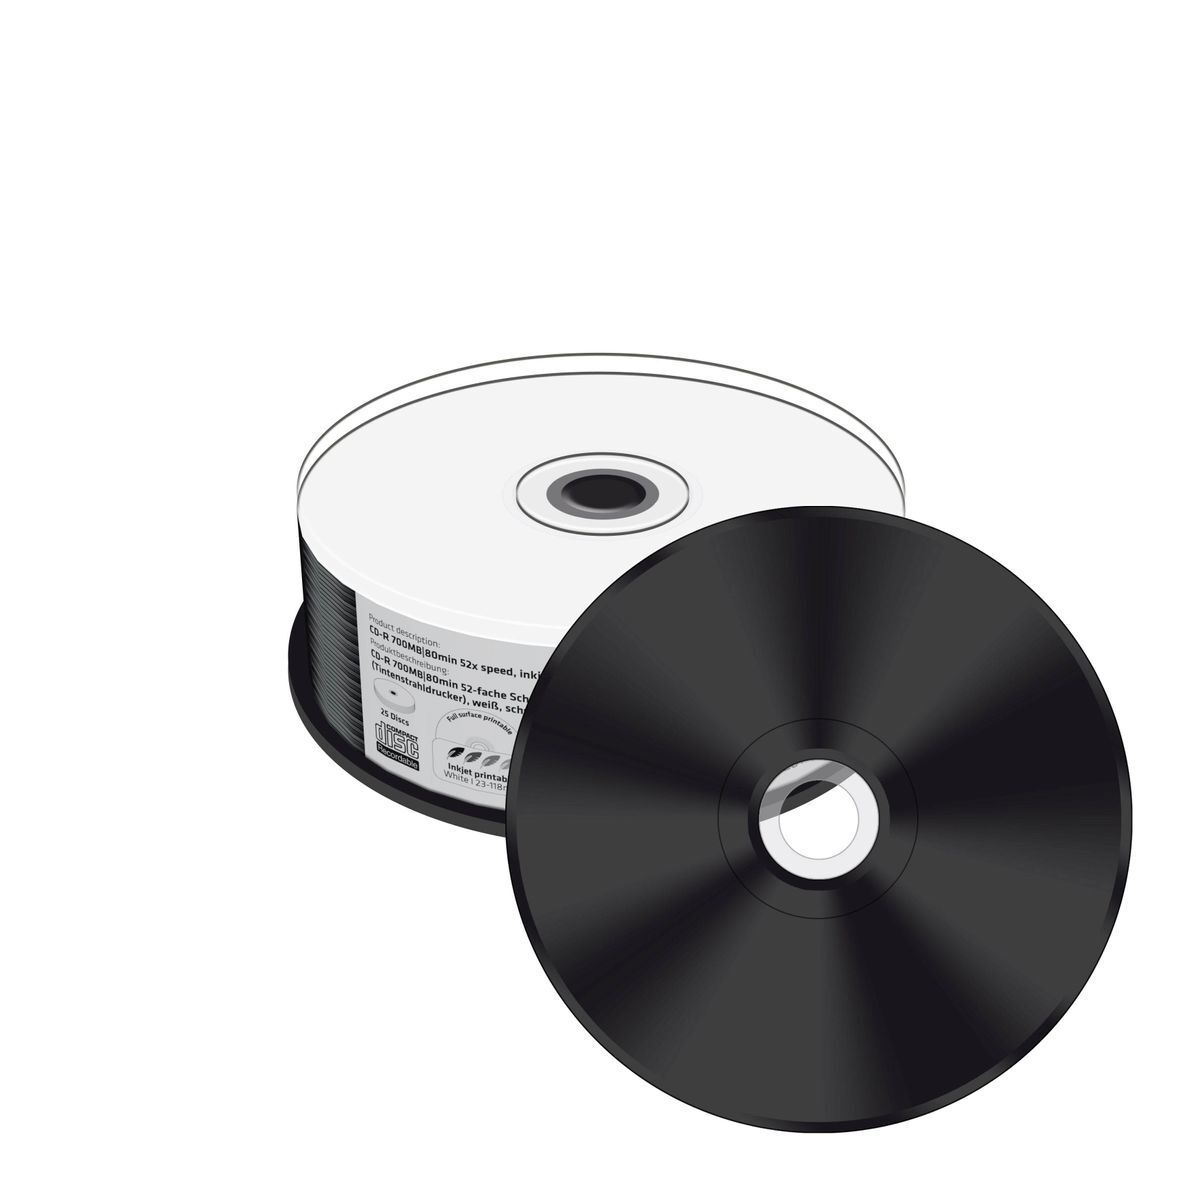 CD-R 700MB, 80min 52-fache Schreibgeschwindigkeit, vollflächig bedruckbar (Tintenstrahldrucker), schwarze Schreibseite, 25er Cakebox